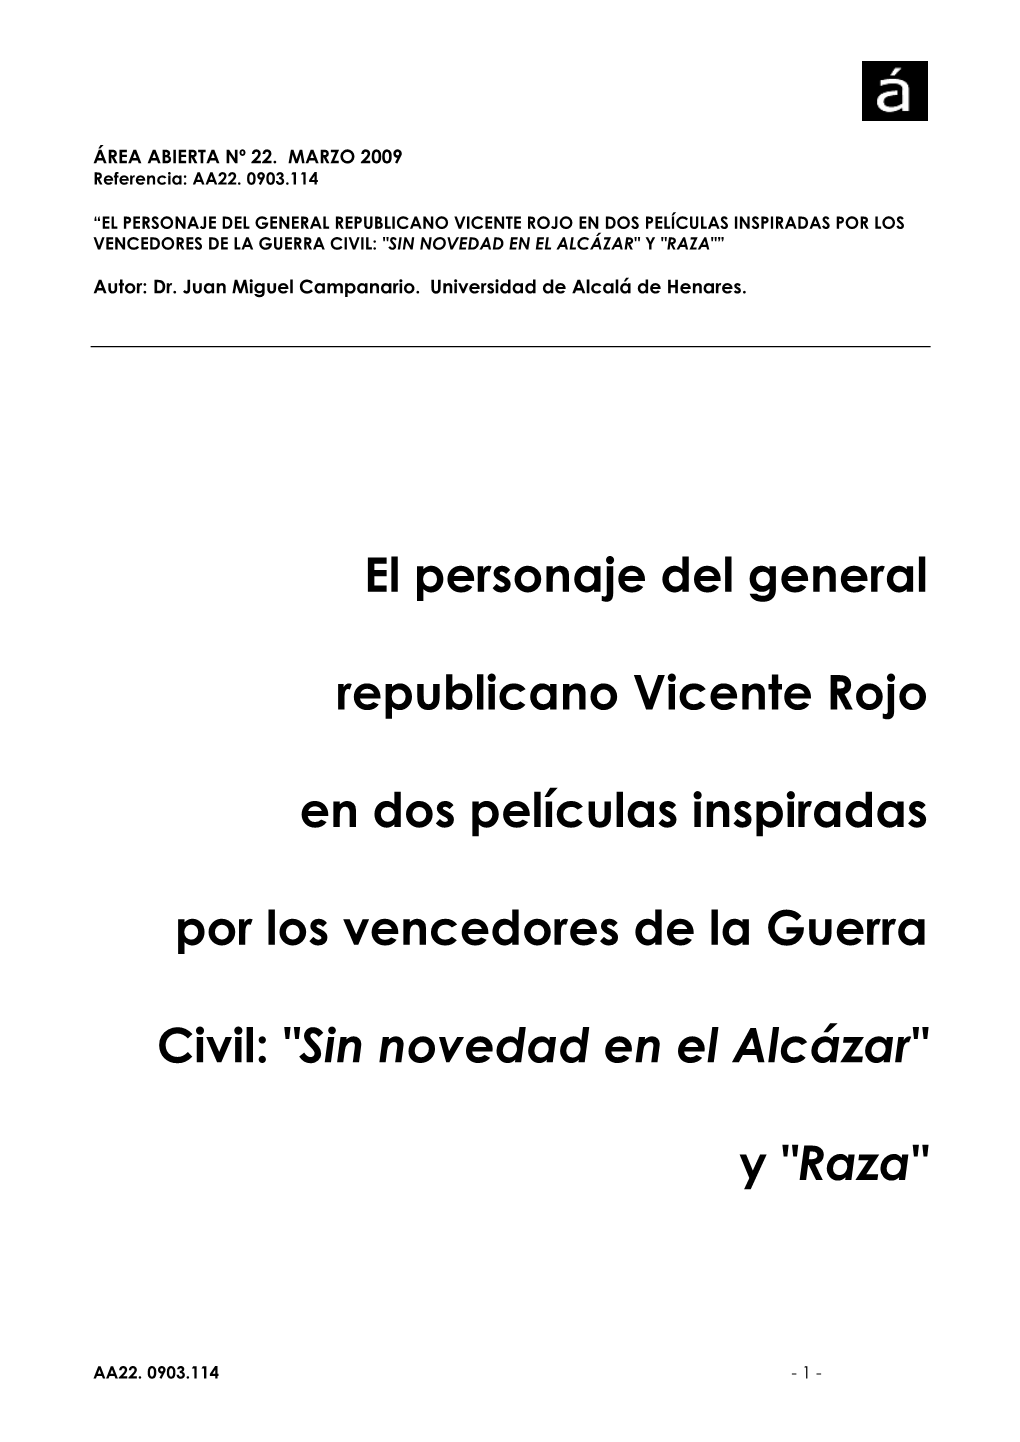 El Personaje Del General Republicano Vicente Rojo En Dos Películas Inspiradas Por Los Vencedores De La Guerra Civil: "Sin Novedad En El Alcázar" Y "Raza"”